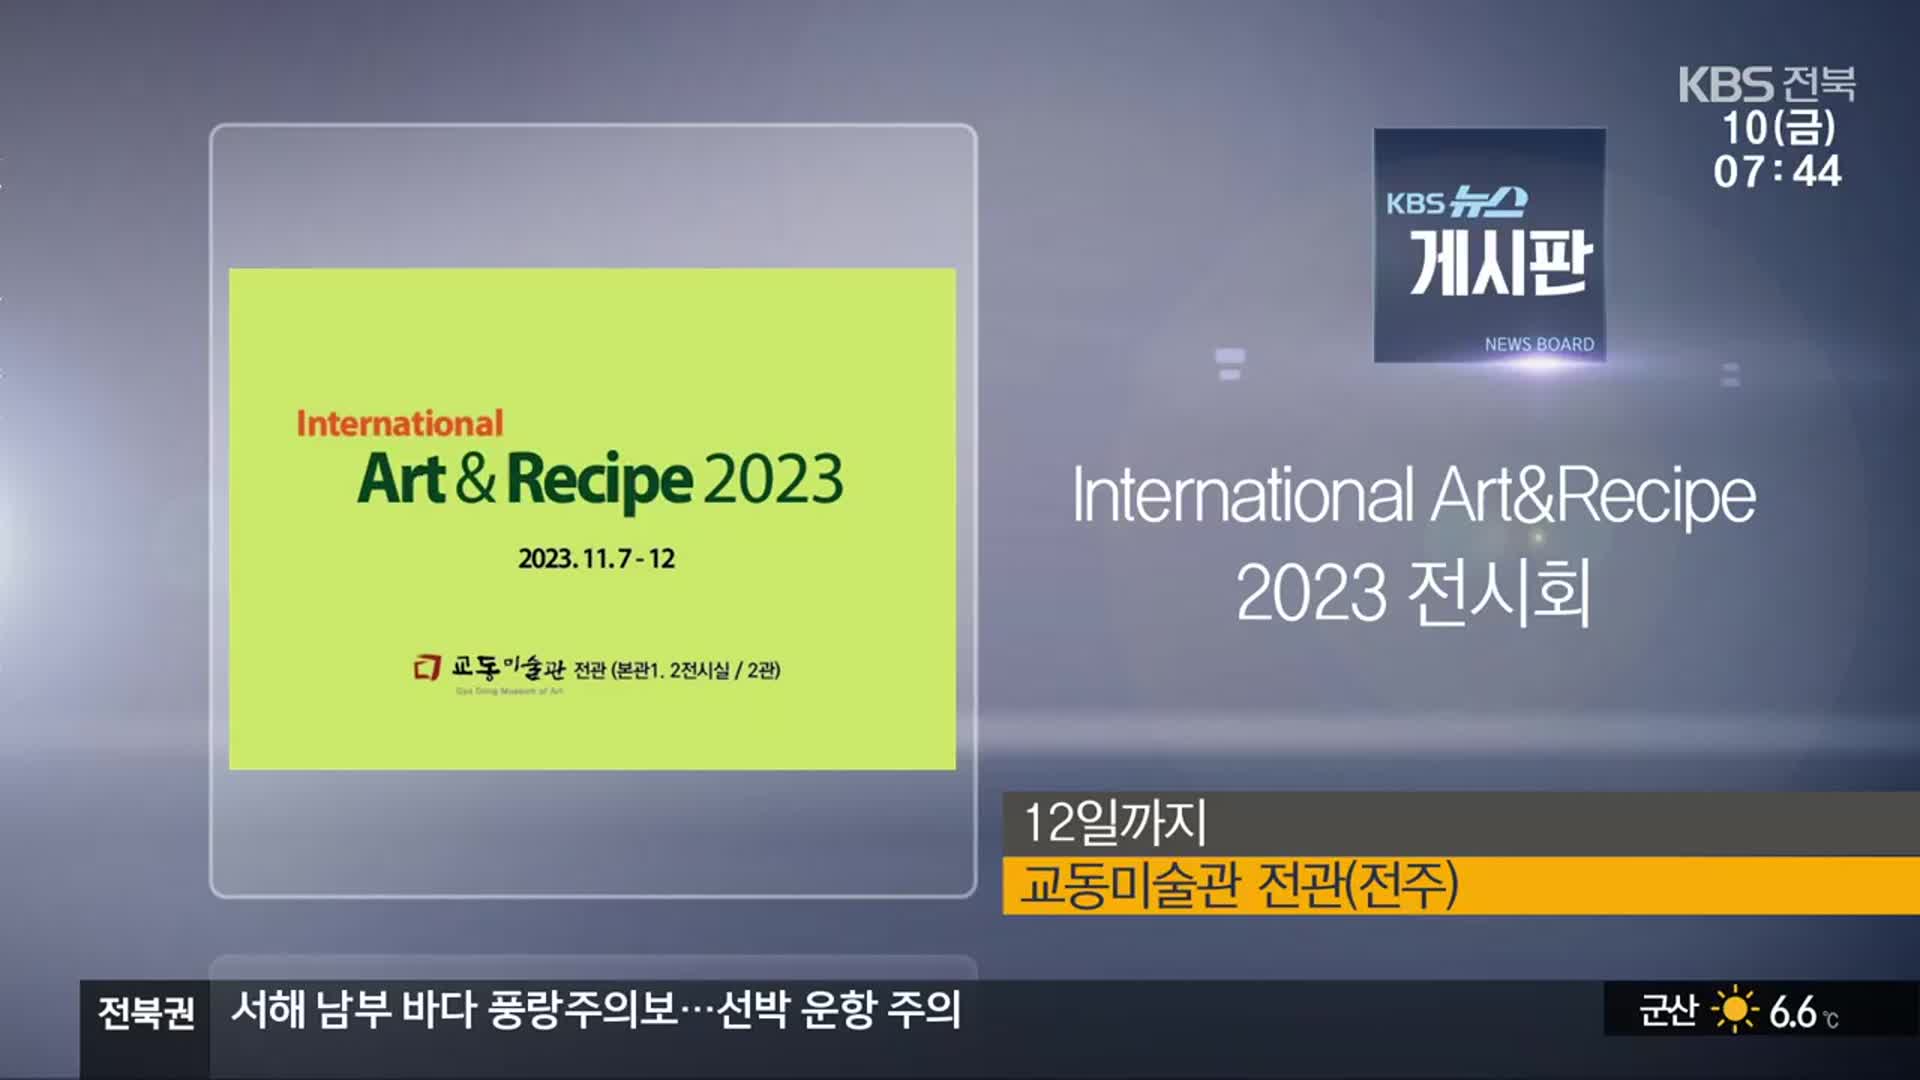 [게시판] lnternational Art&Recipe 2023 전시회 외